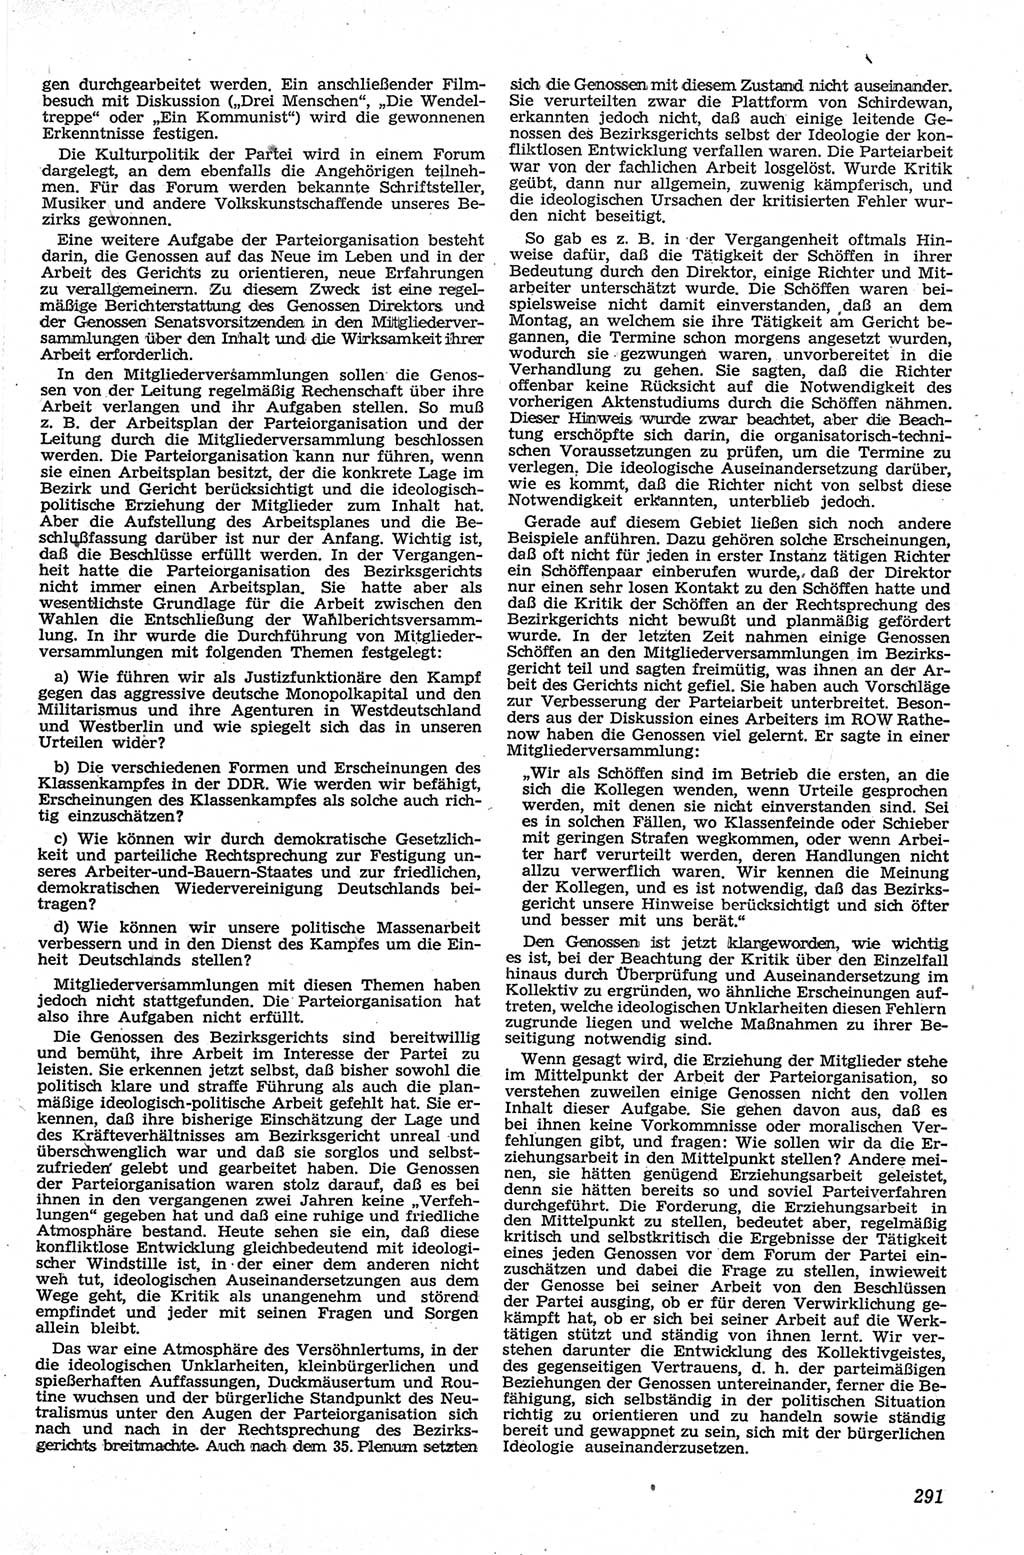 Neue Justiz (NJ), Zeitschrift für Recht und Rechtswissenschaft [Deutsche Demokratische Republik (DDR)], 13. Jahrgang 1959, Seite 291 (NJ DDR 1959, S. 291)